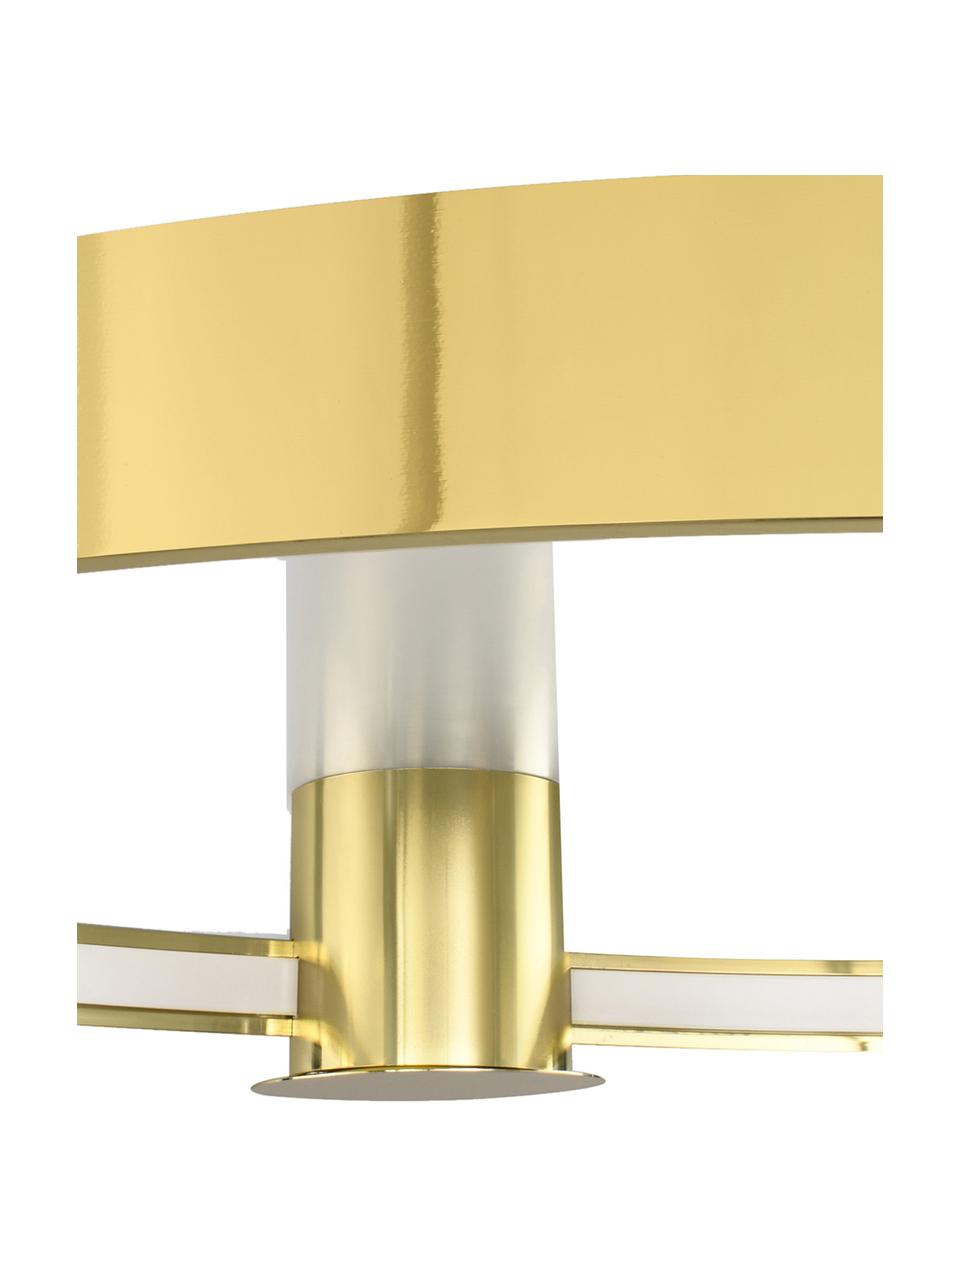 Grosse  LED-Deckenleuchte Tim, handgefertigt, Goldfarben, glänzend, B 78 x H 13 cm